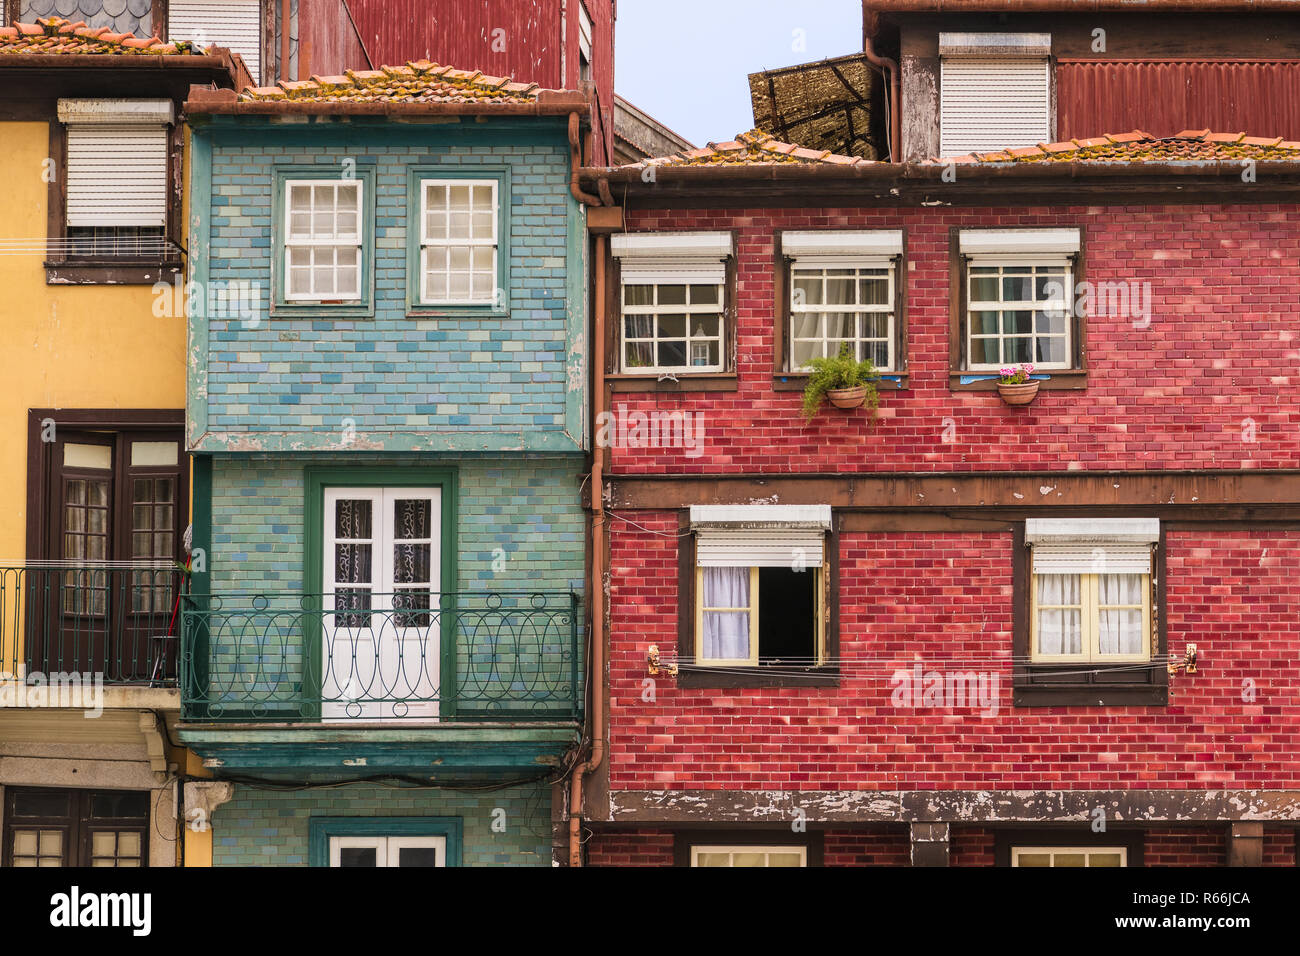 Bunte, Alte, verwitterte Gebäude mit Fliesen- und Stuckfassaden in rote, gelbe und blaue Farbtöne in Porto, Portugal Stockfoto